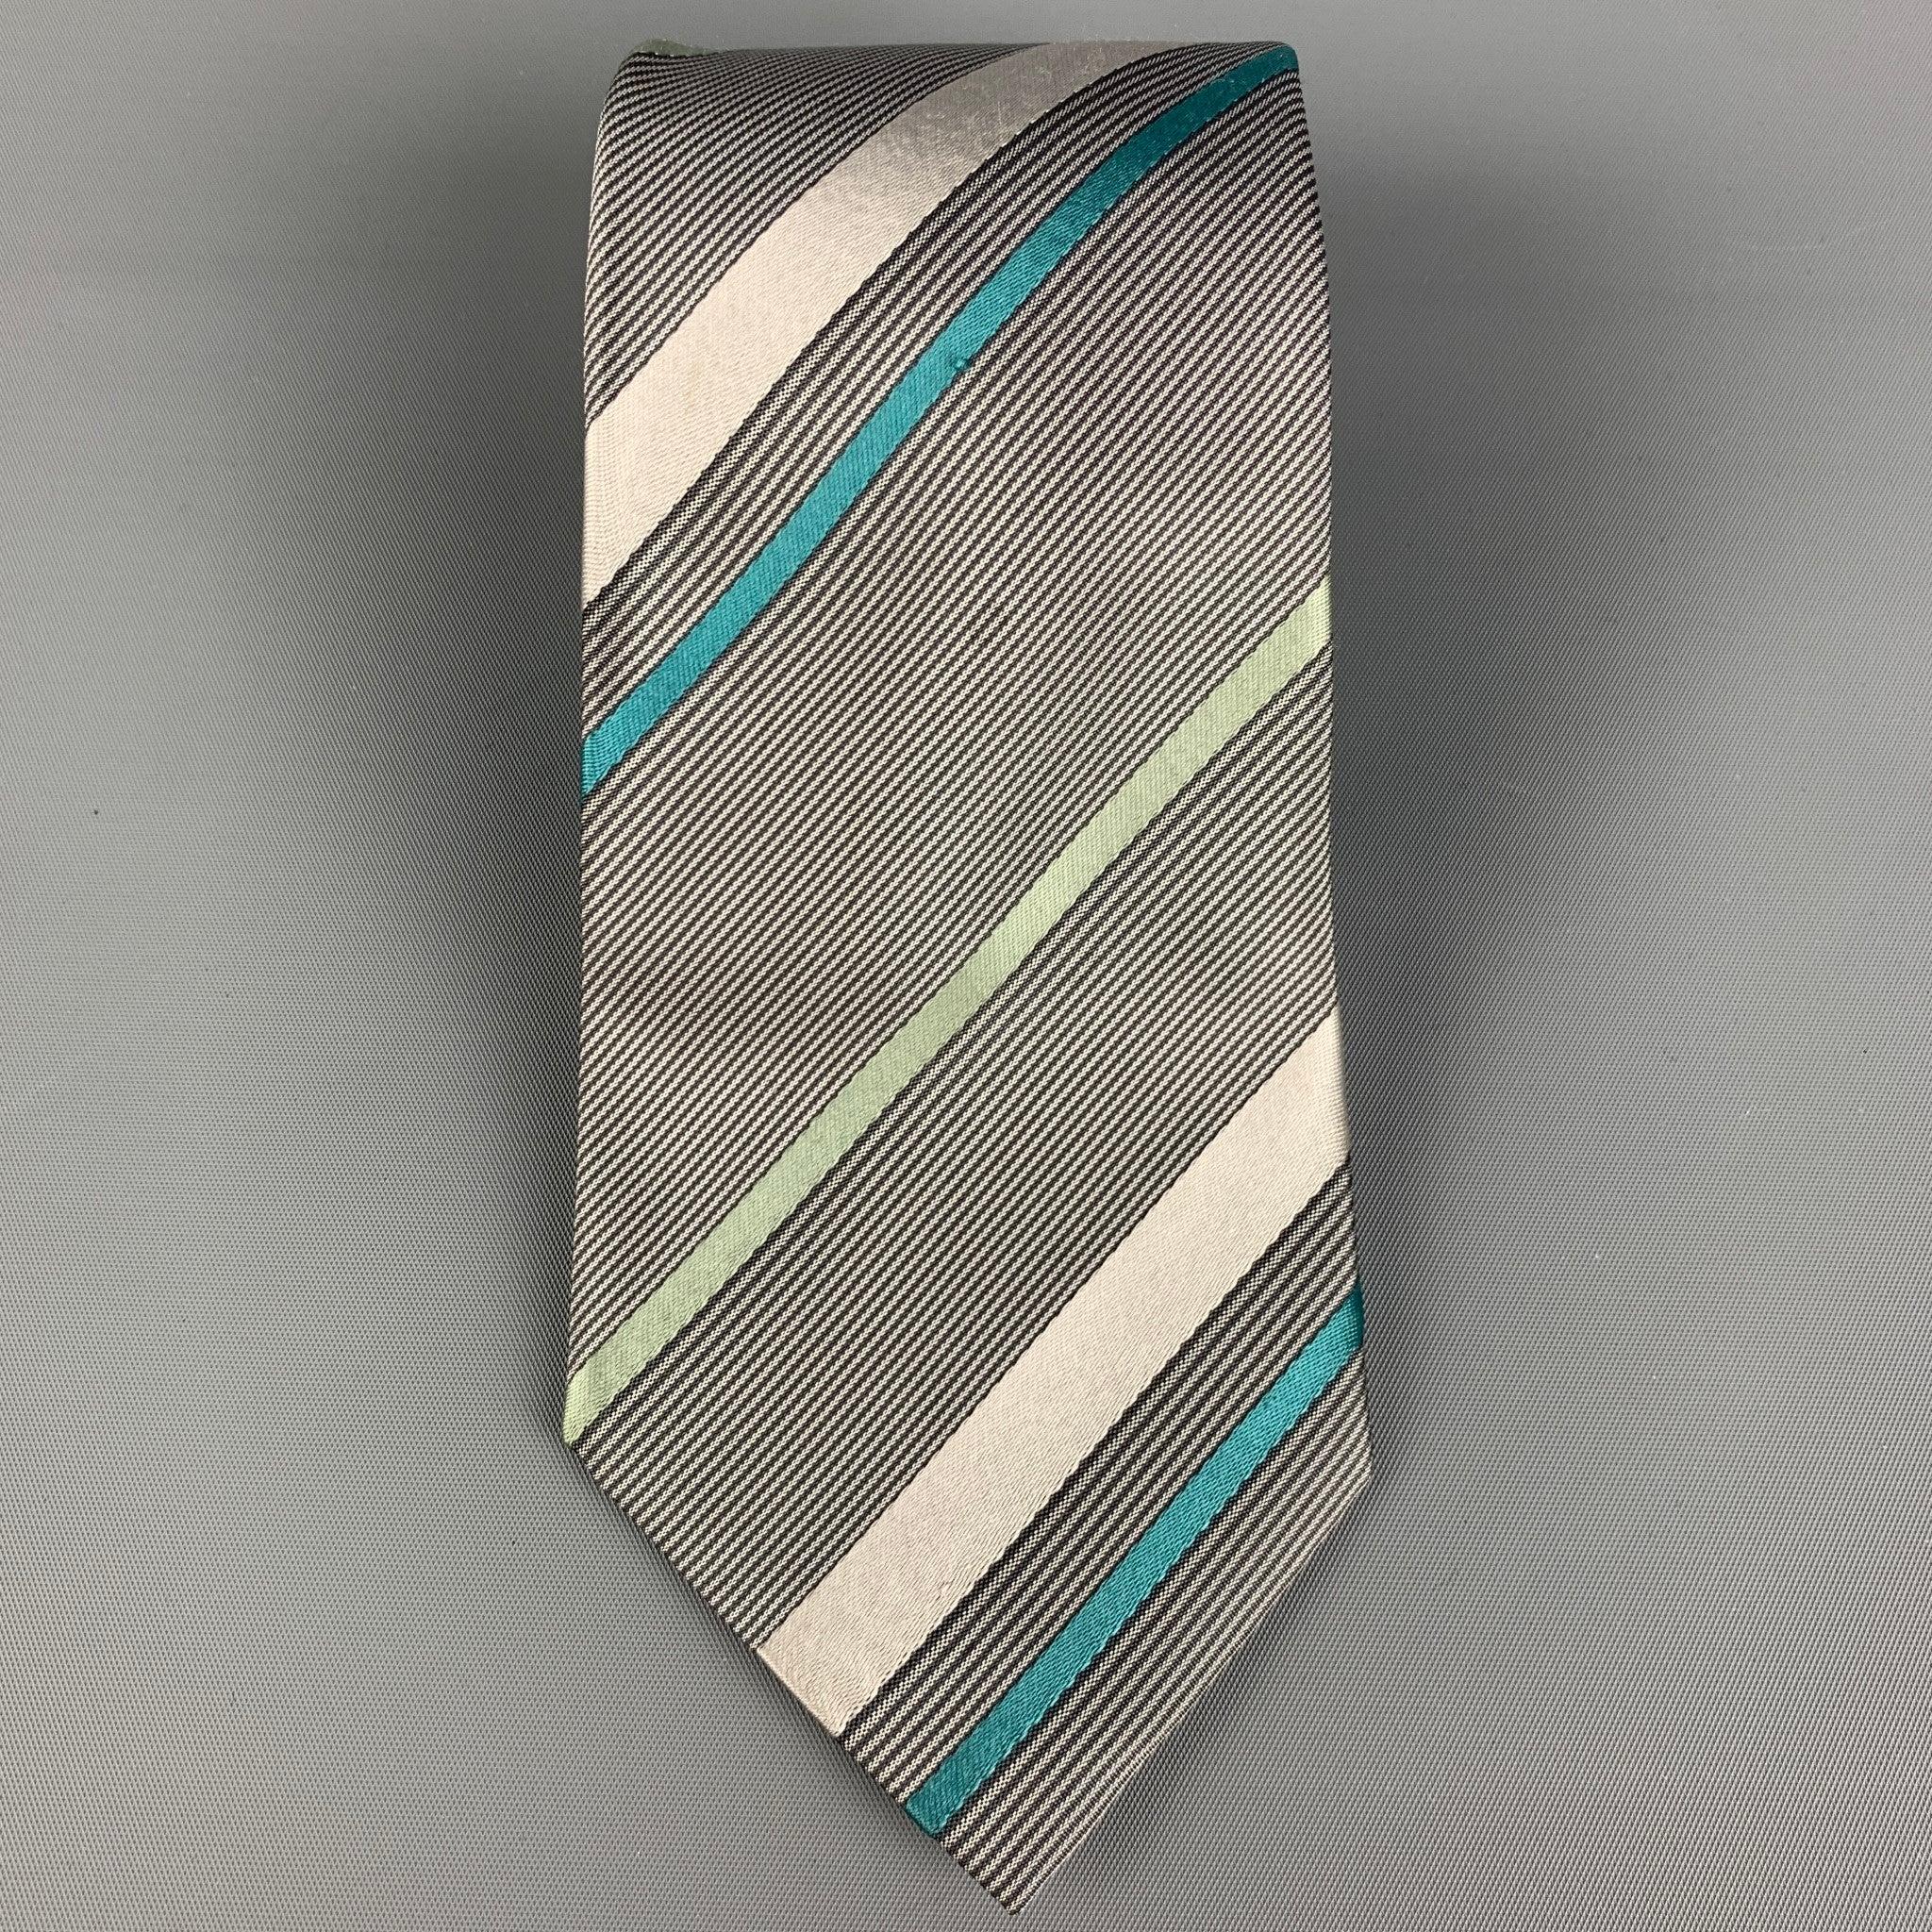 DRIES VAN NOTEN
Die Krawatte ist aus grauer und schwarzer Seide mit einem Streifenmuster. Hergestellt in Belgien. Sehr guter, gebrauchter Zustand, Breite: 3.5 Zoll 
  
  
 
Referenz: 117443
Kategorie: Krawatte
Mehr Details
    
Marke:  DRIES VAN